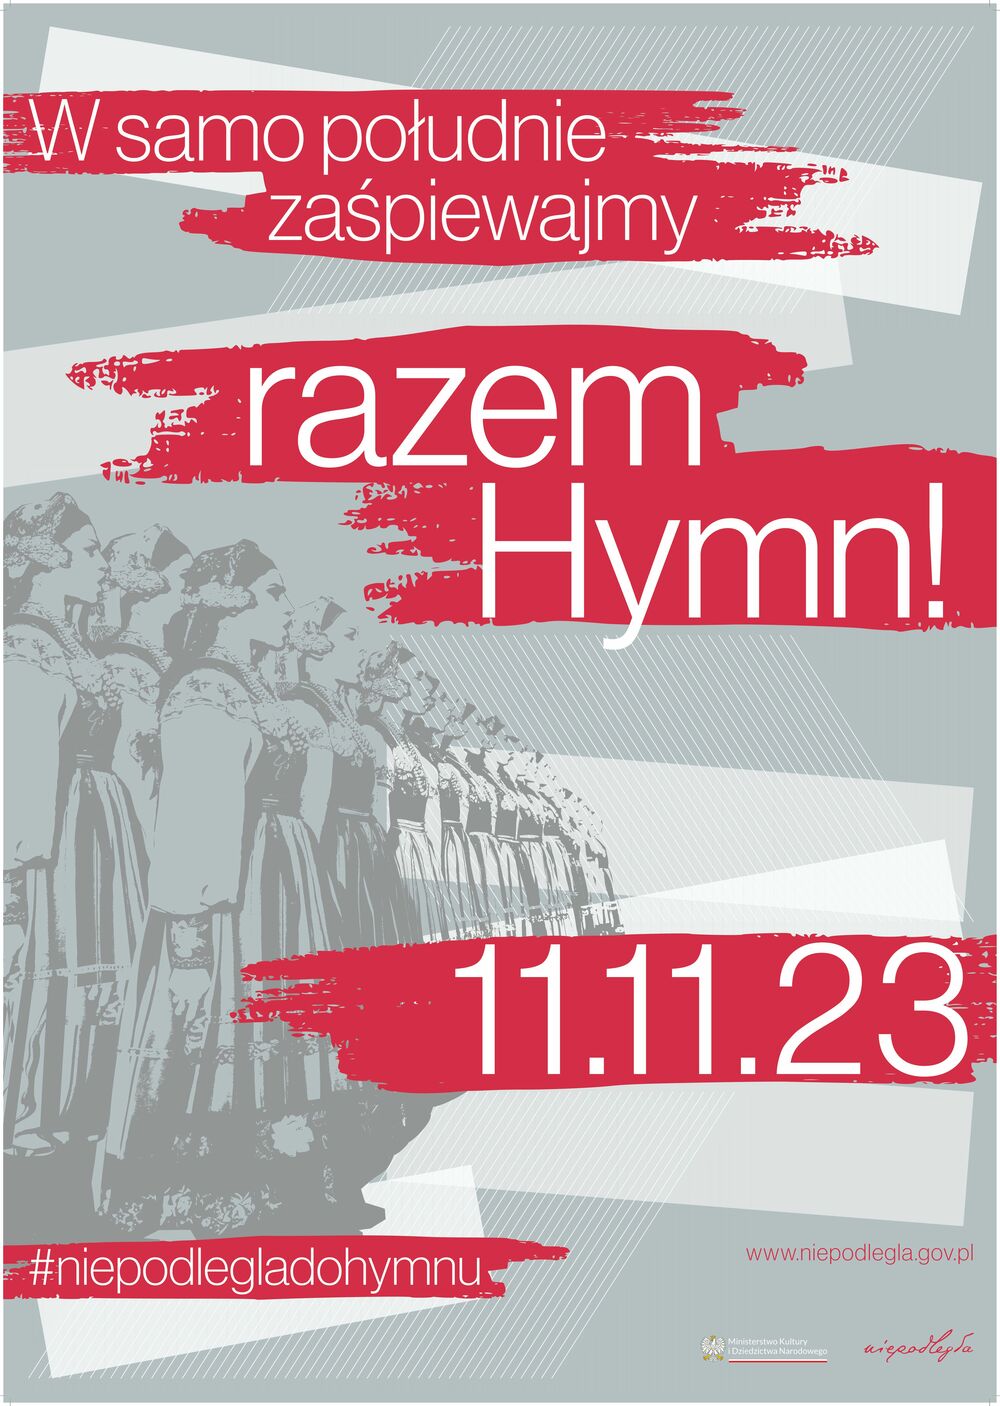 W samo południe zaśpiewajmy razem Hymn! 11.11.23. #niepodlegladohymnu www.niepodlegla.gov.pl Ministerstwo Kultury iDziedzictwa Narodowego niepodlegda.